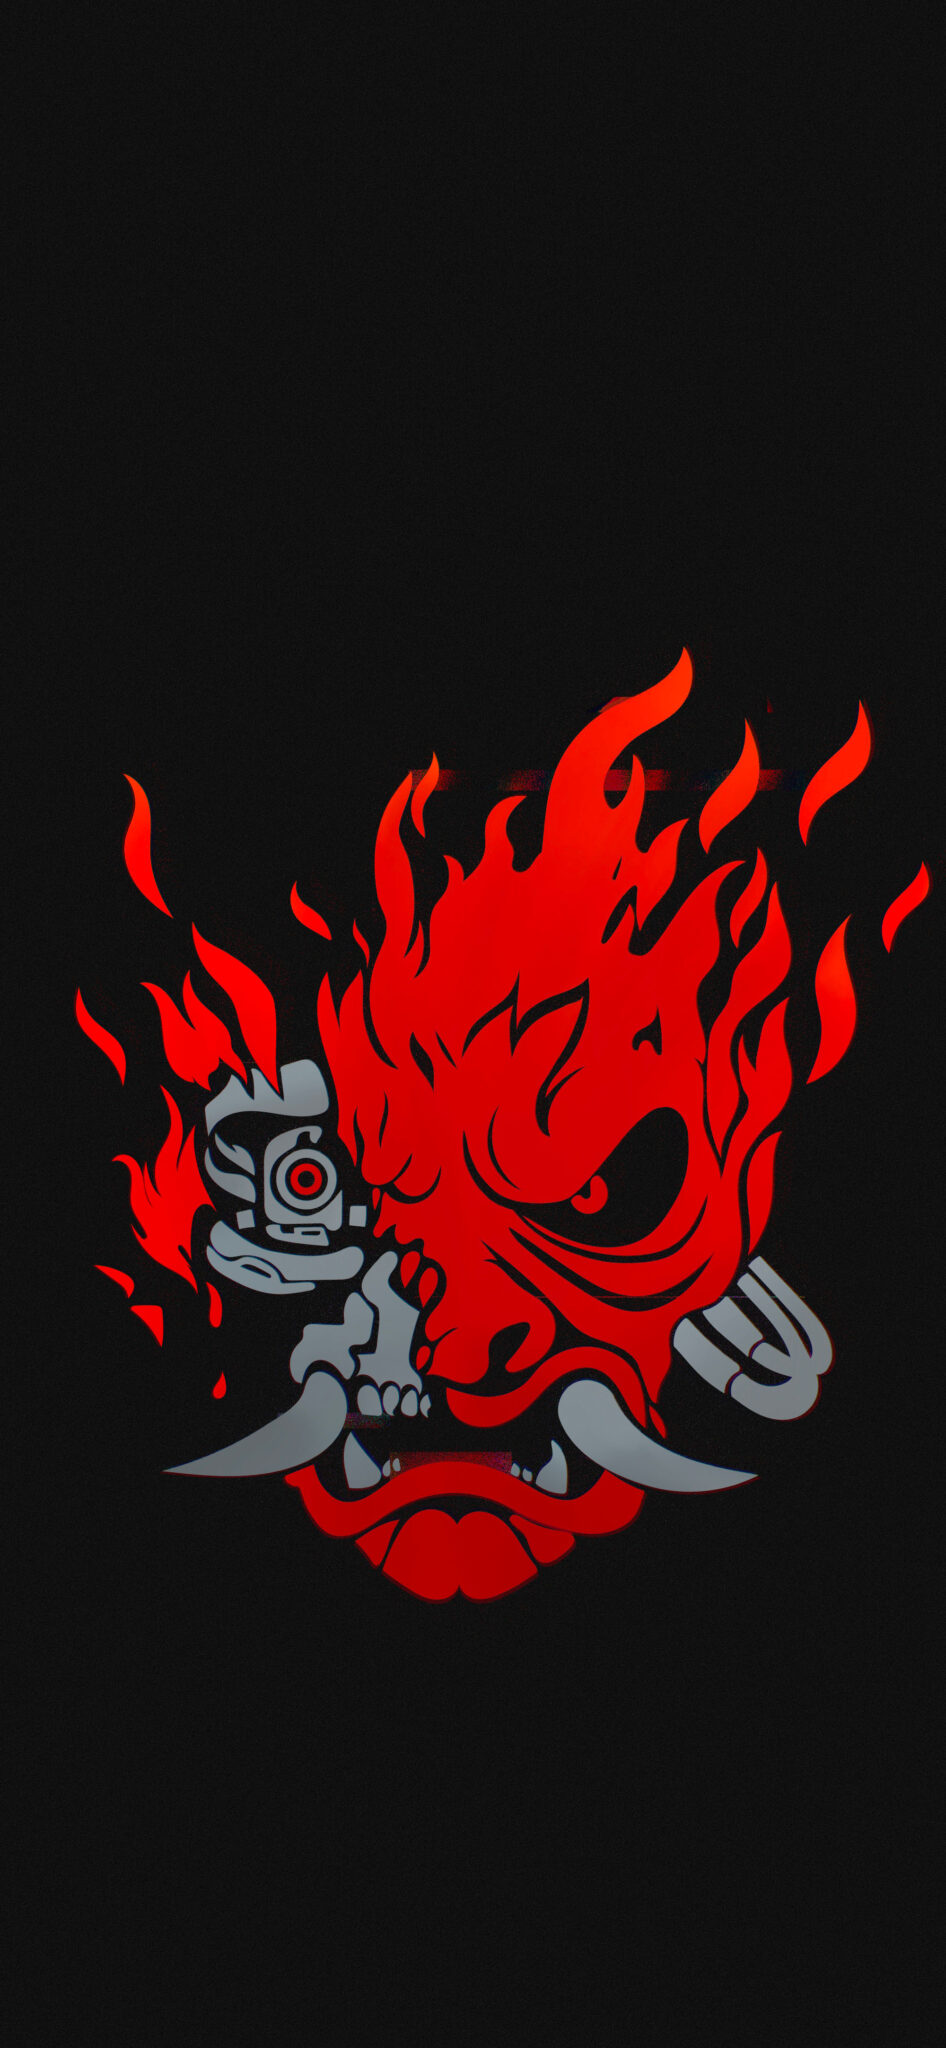 Samurai логотип cyberpunk фото 90